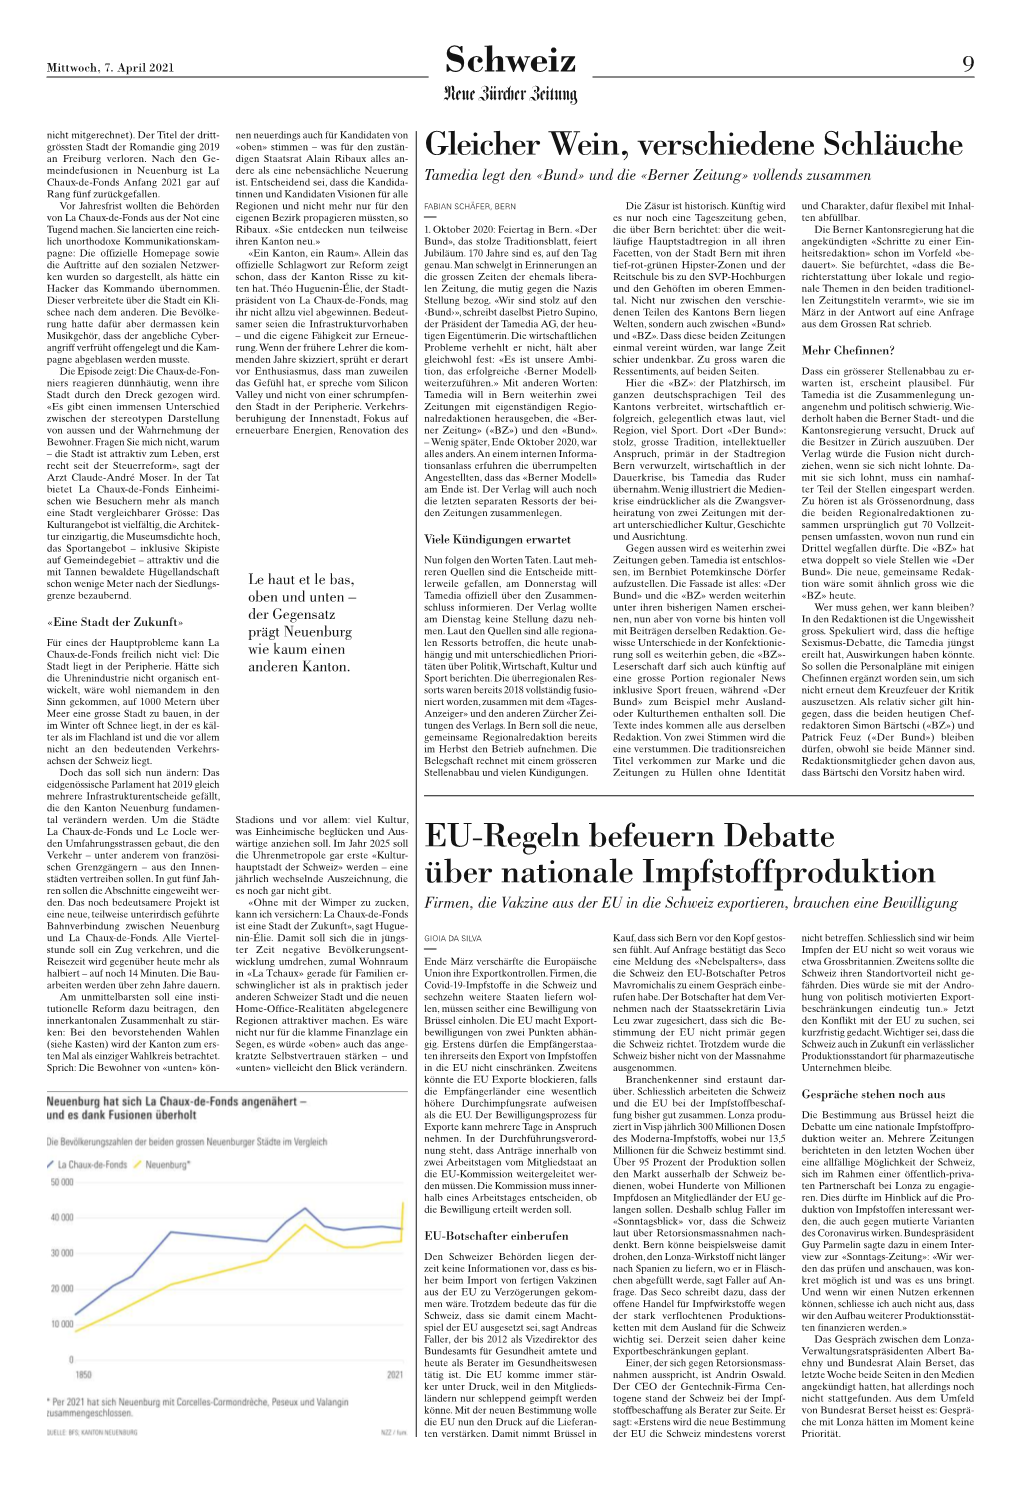 Neue Zürcher Zeitung, 7. April 2021